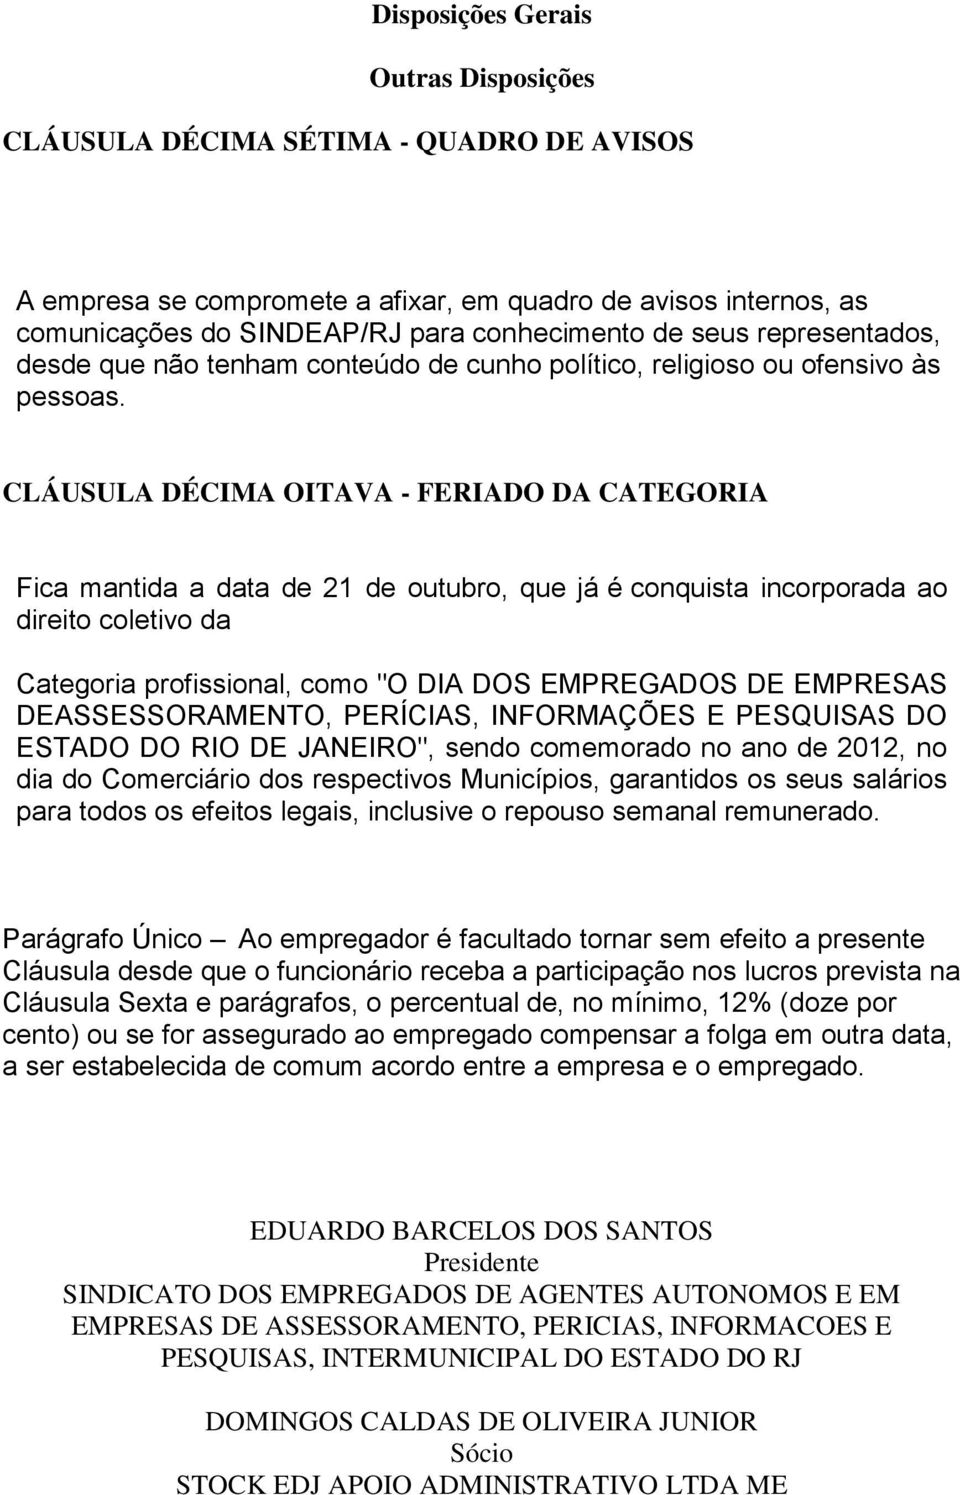 CLÁUSULA DÉCIMA OITAVA - FERIADO DA CATEGORIA Fica mantida a data de 21 de outubro, que já é conquista incorporada ao direito coletivo da Categoria profissional, como "O DIA DOS EMPREGADOS DE